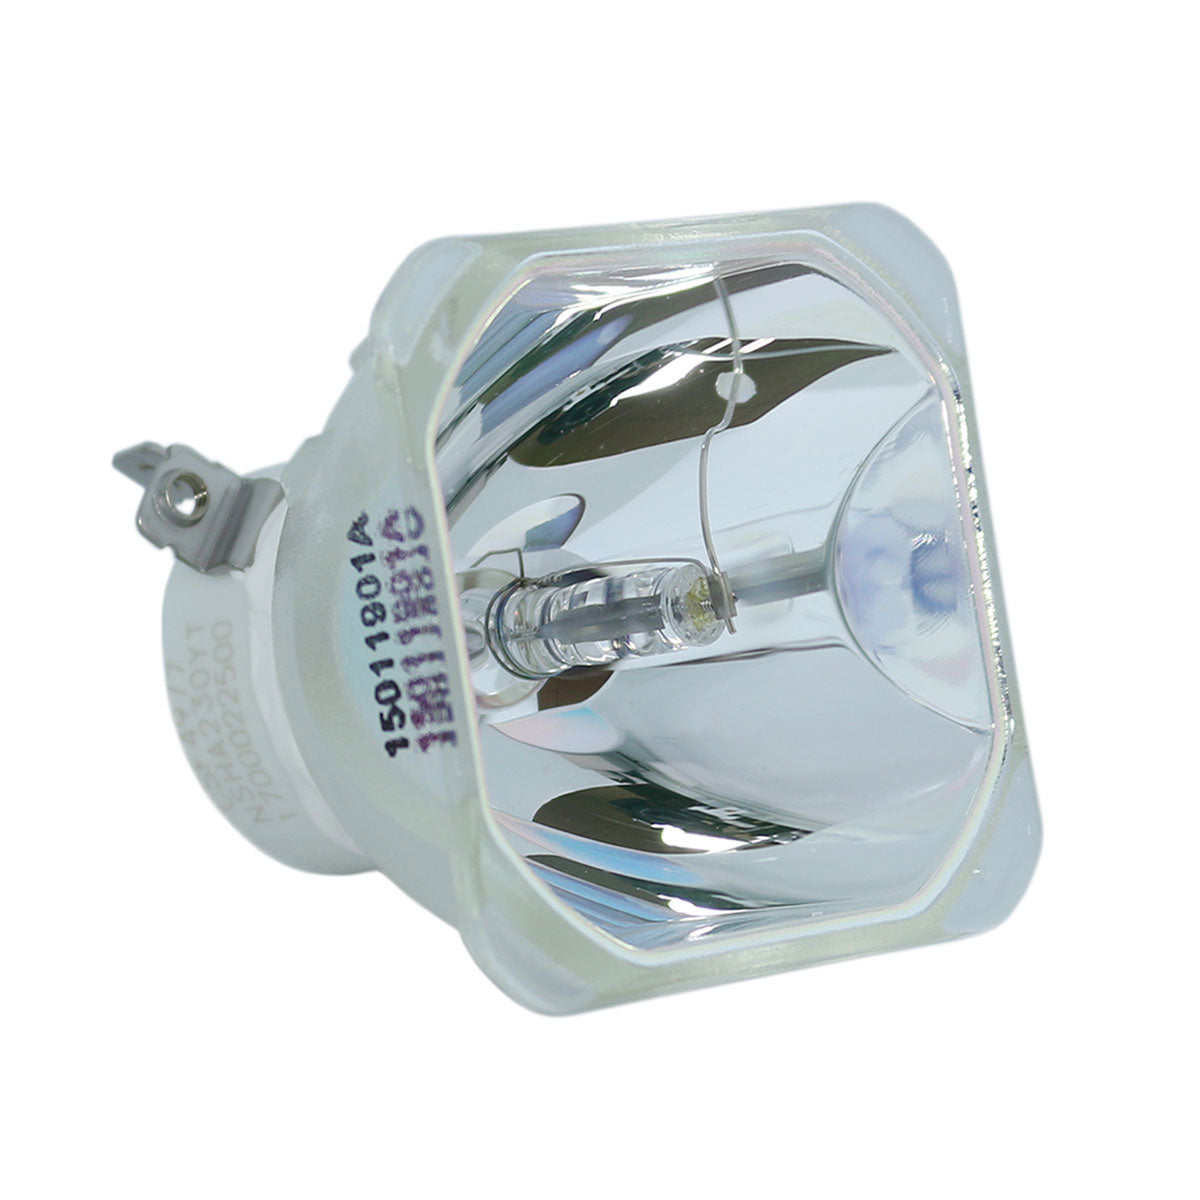 Eiki 23040047 Ushio Projector Bare Lamp